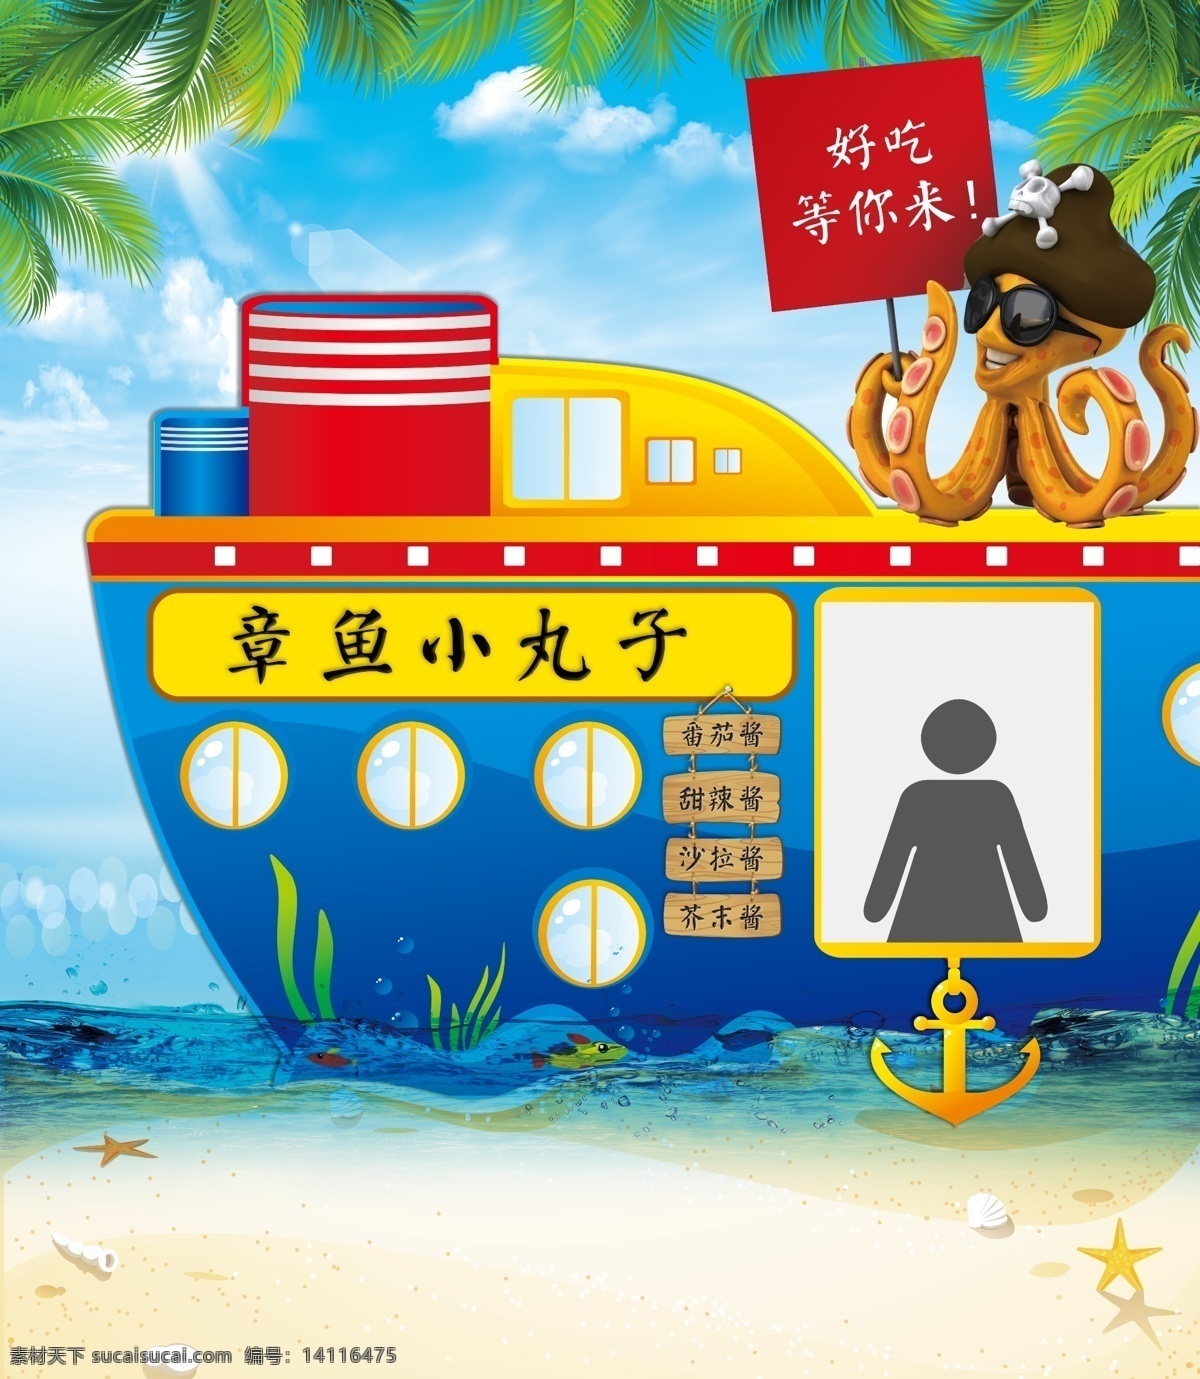 鱿鱼 矢量海盗船 蓝天 椰子树 海盗船 售卖异形 矢量卡通船 共享1 室内广告设计